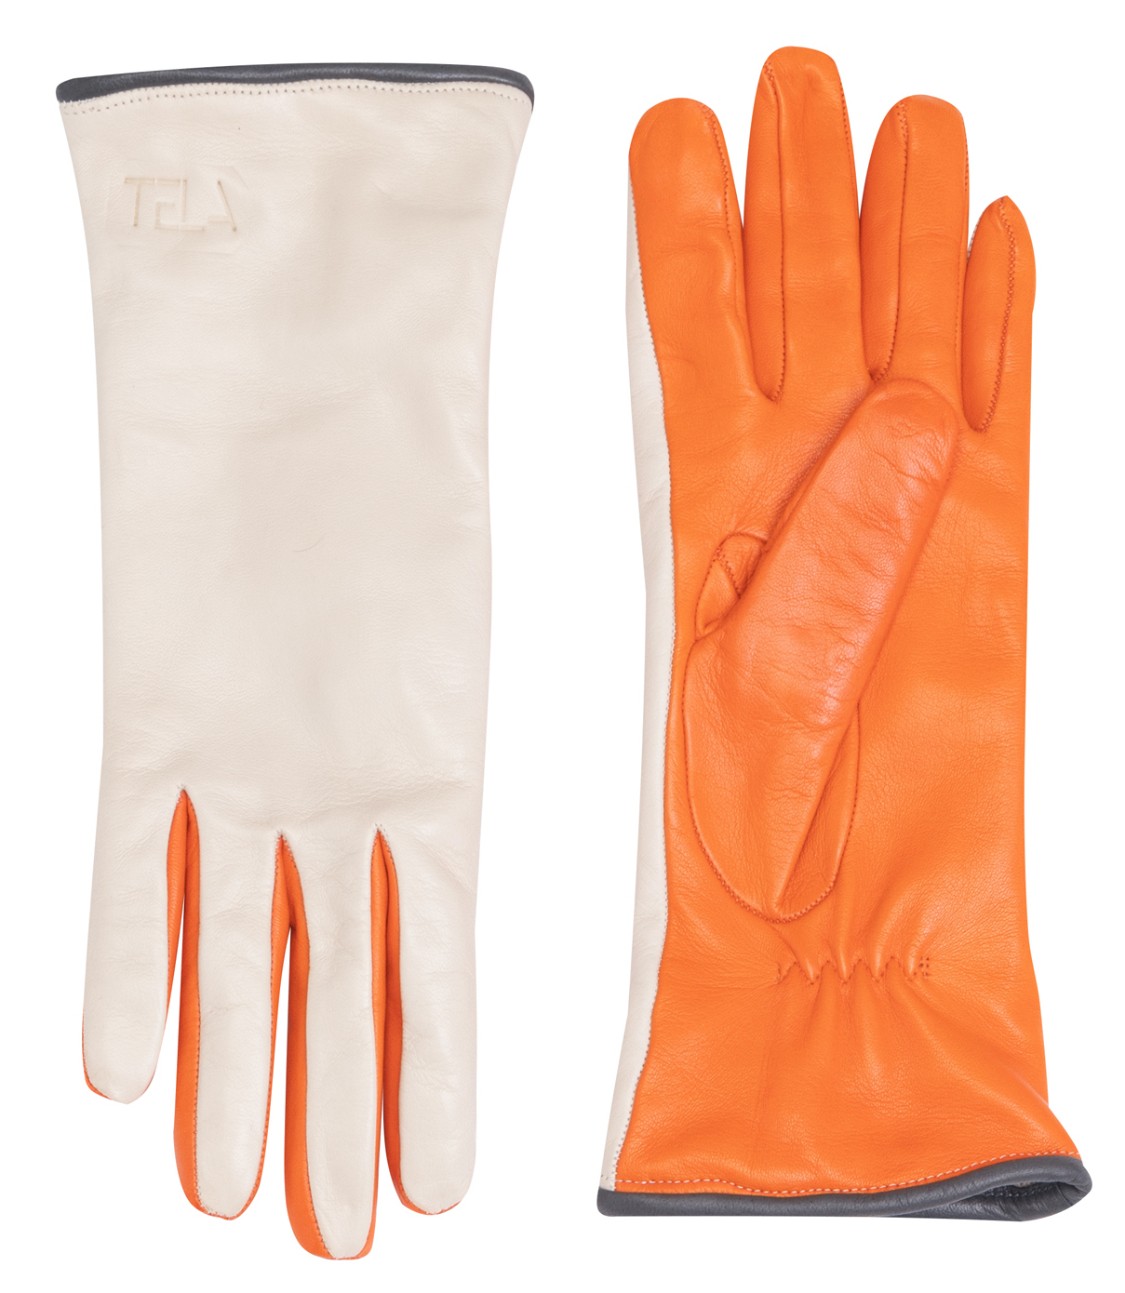 shop Tela  Accessori: Accessori Tela, guanti in pelle multicolore: arancione e panna.


Composizione: 100% pelle. number 2471